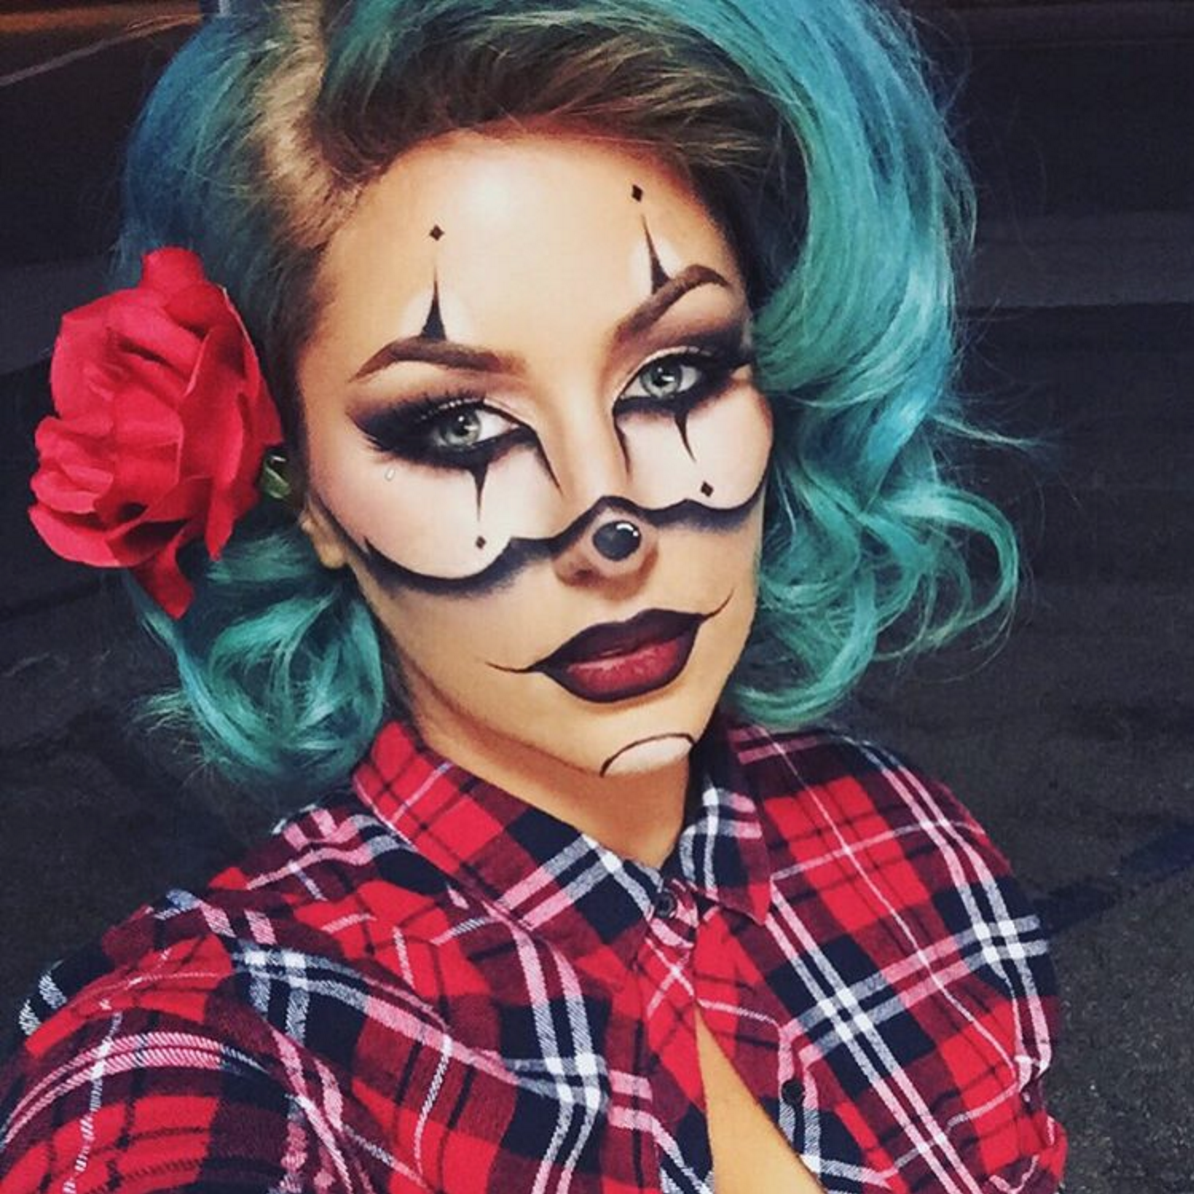 Gangster clown creative halloween makeup